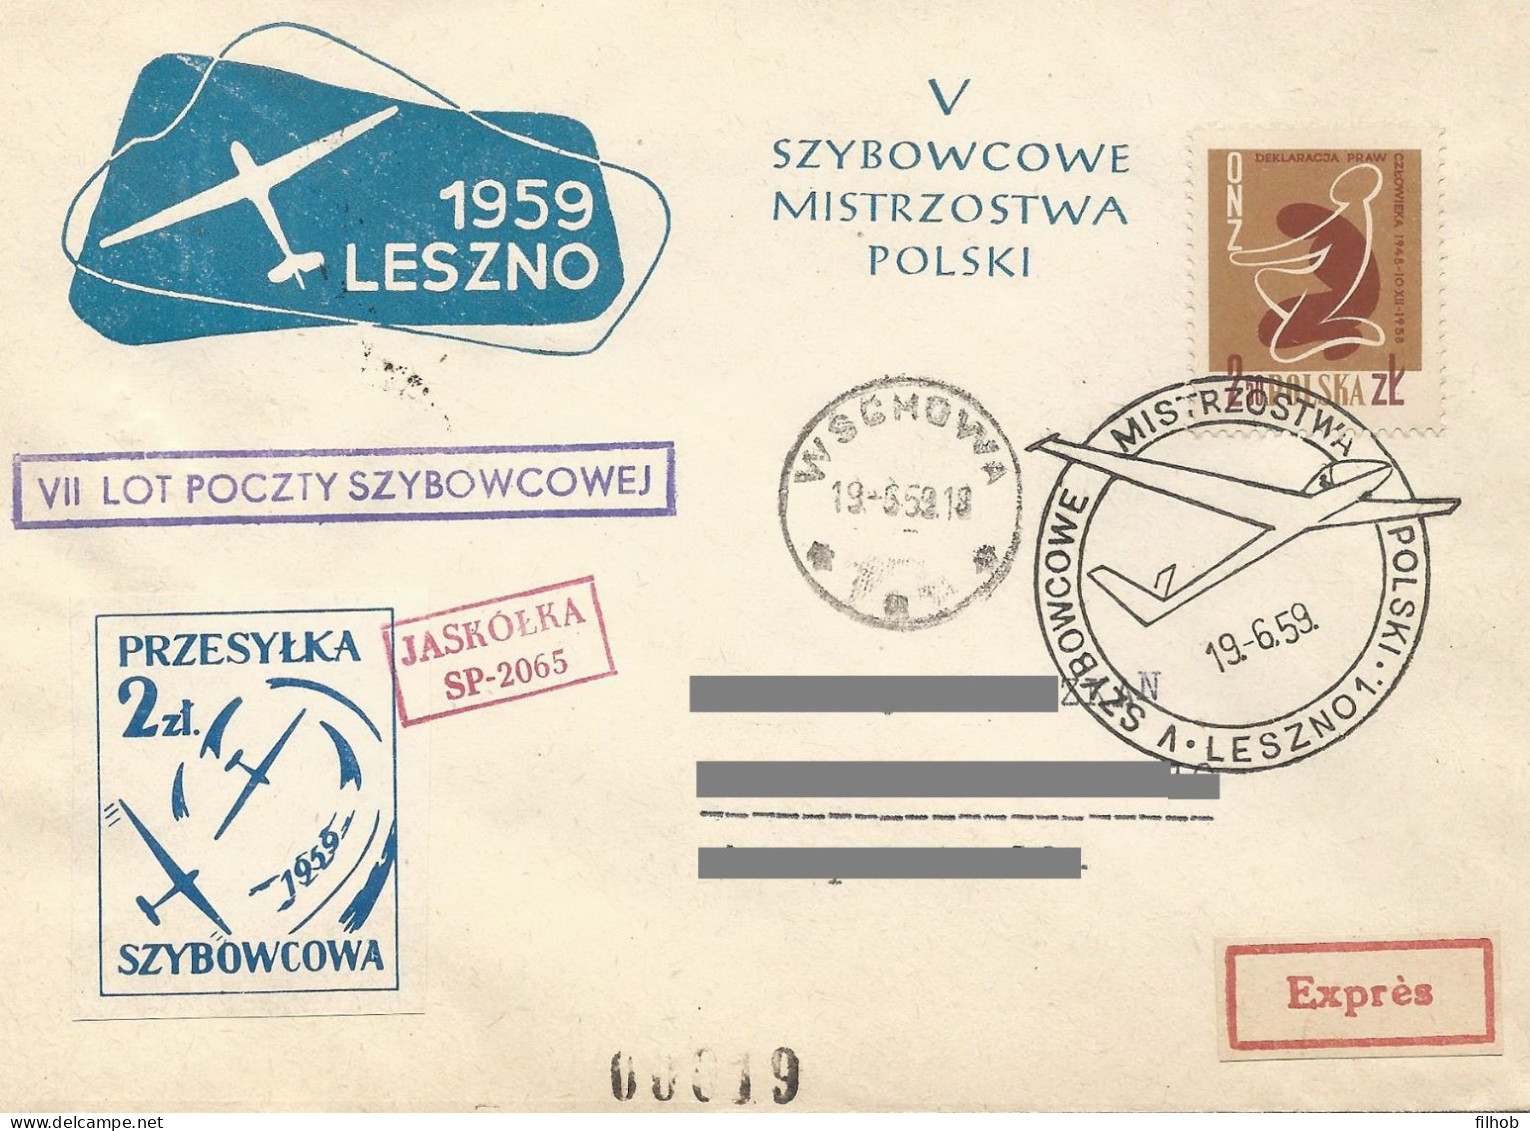 Poland Post - Glider PSZ.1959.lesz.06: Sport Leszno Polish Championships Jaskolka - Planeadores